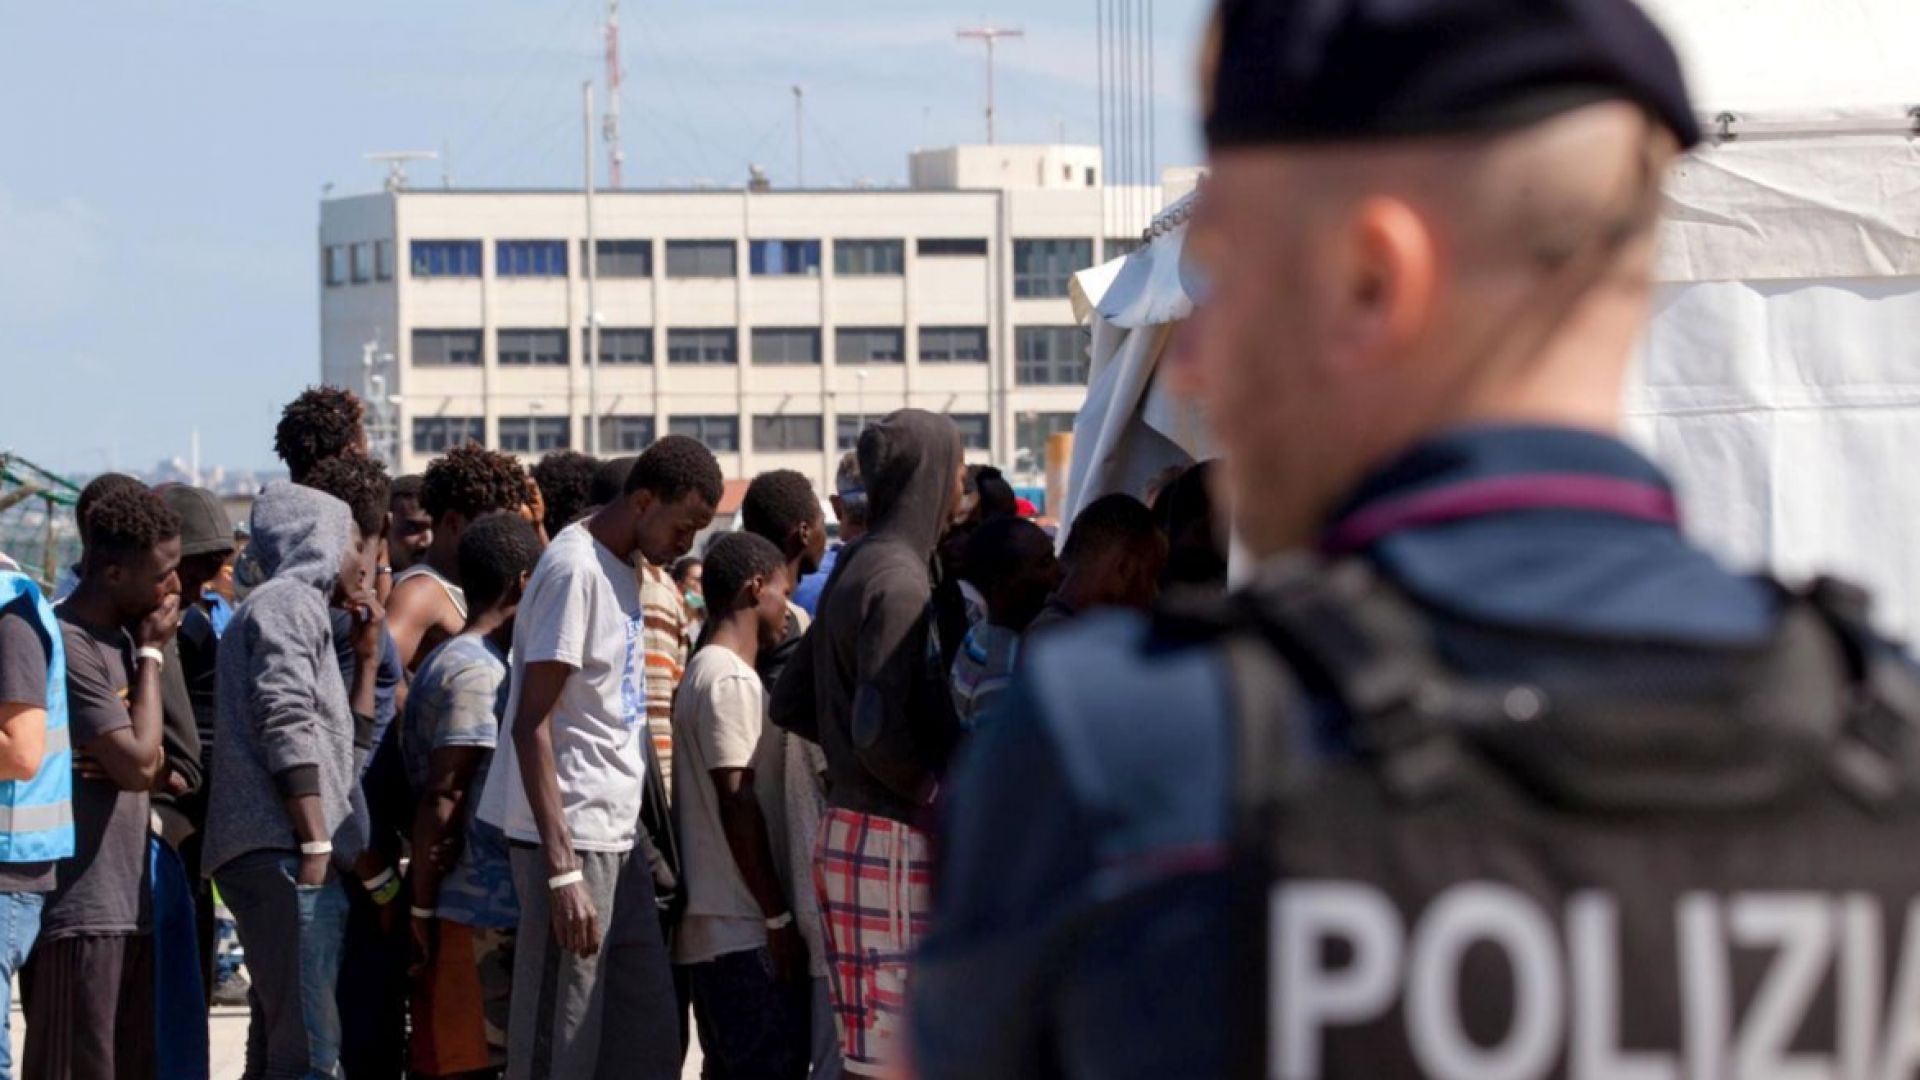 Френската полиция изгони 500 мигранти от лагер в Кале след сблъсъци